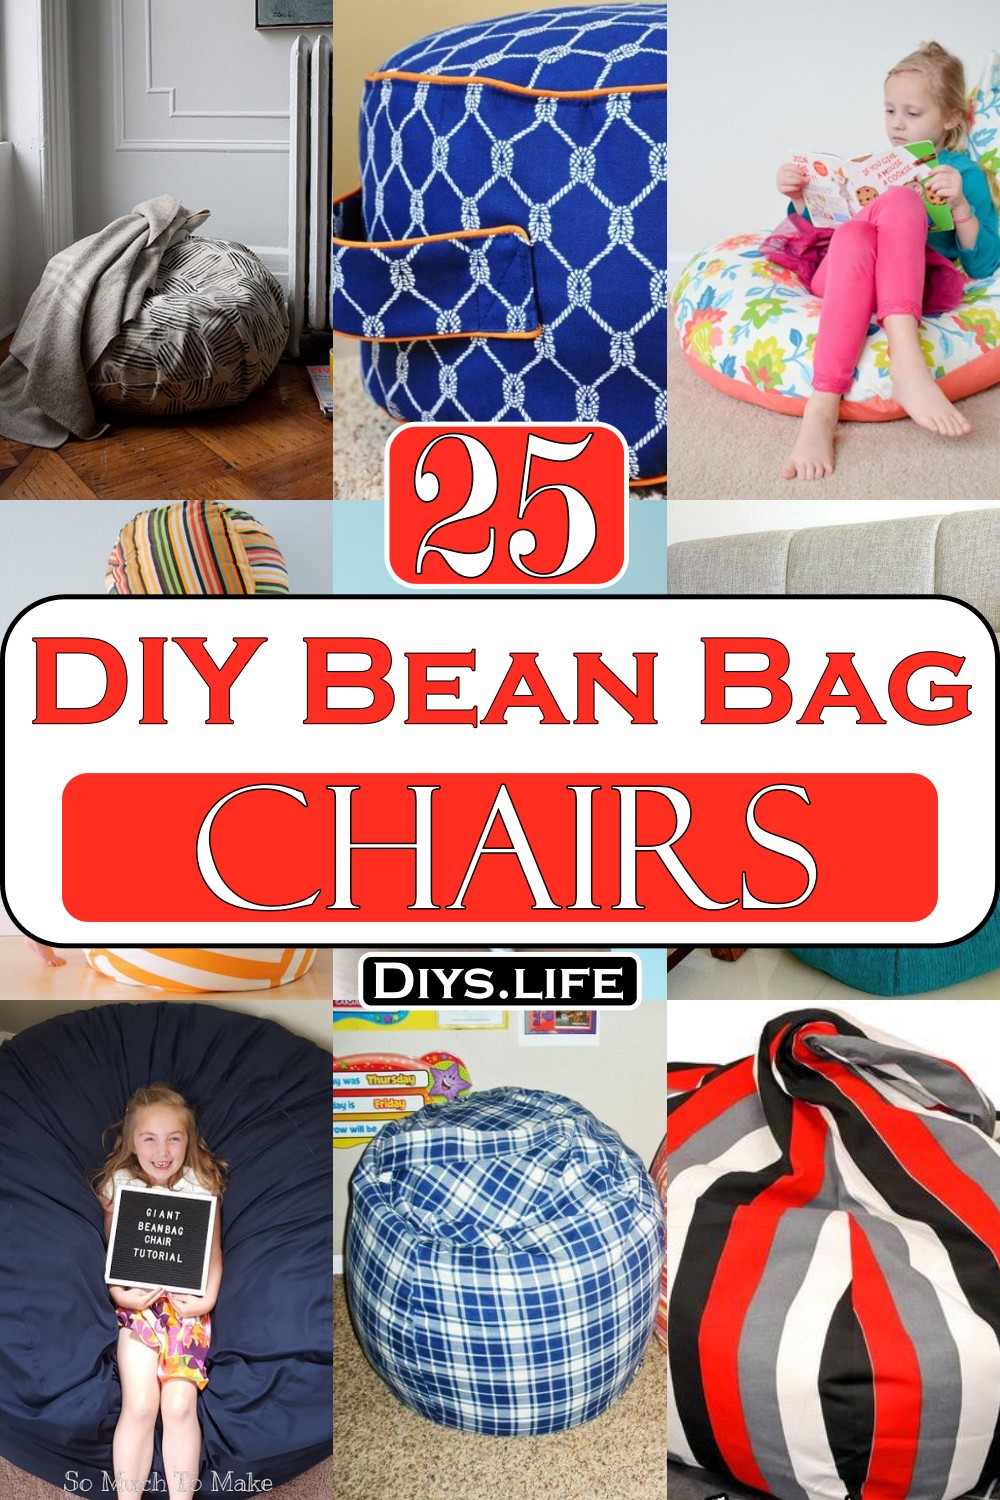 DIY Bean Bag Chairs